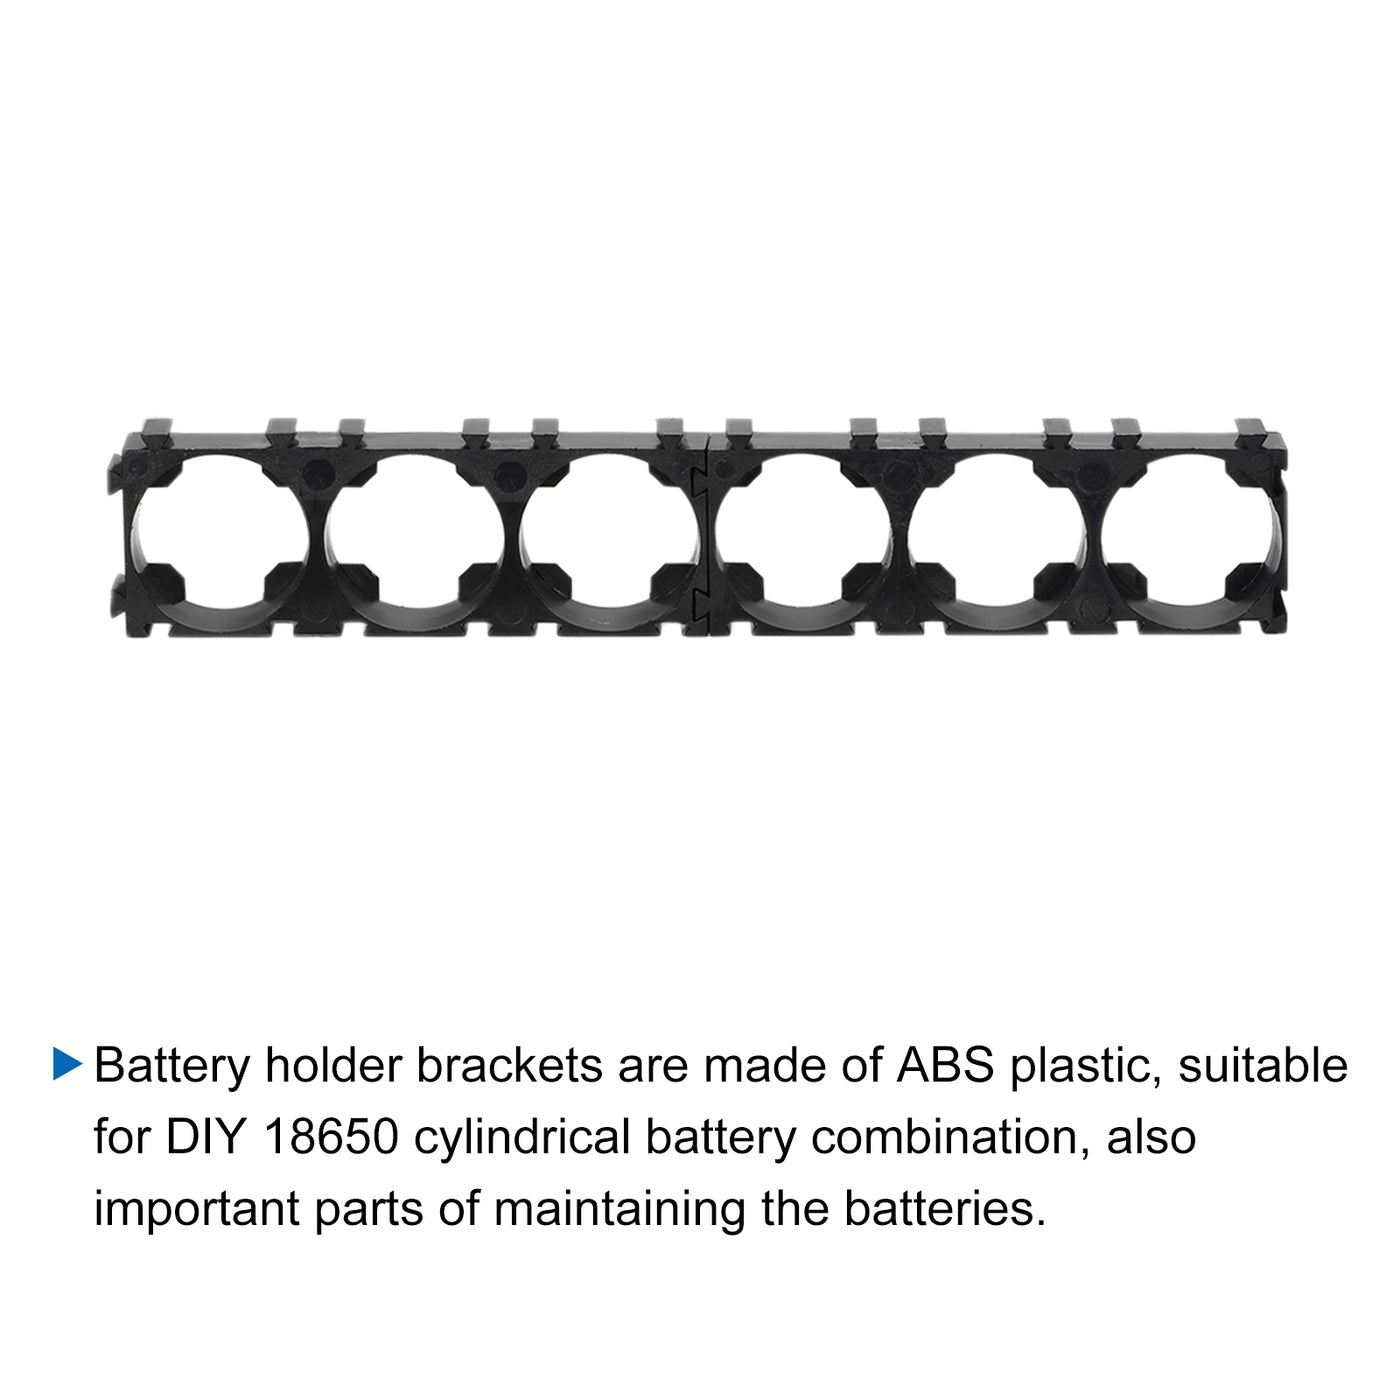 Harfington Battery Holder Bracket 6 x 1 18.4mm Diameter for DIY Battery Pack of 10